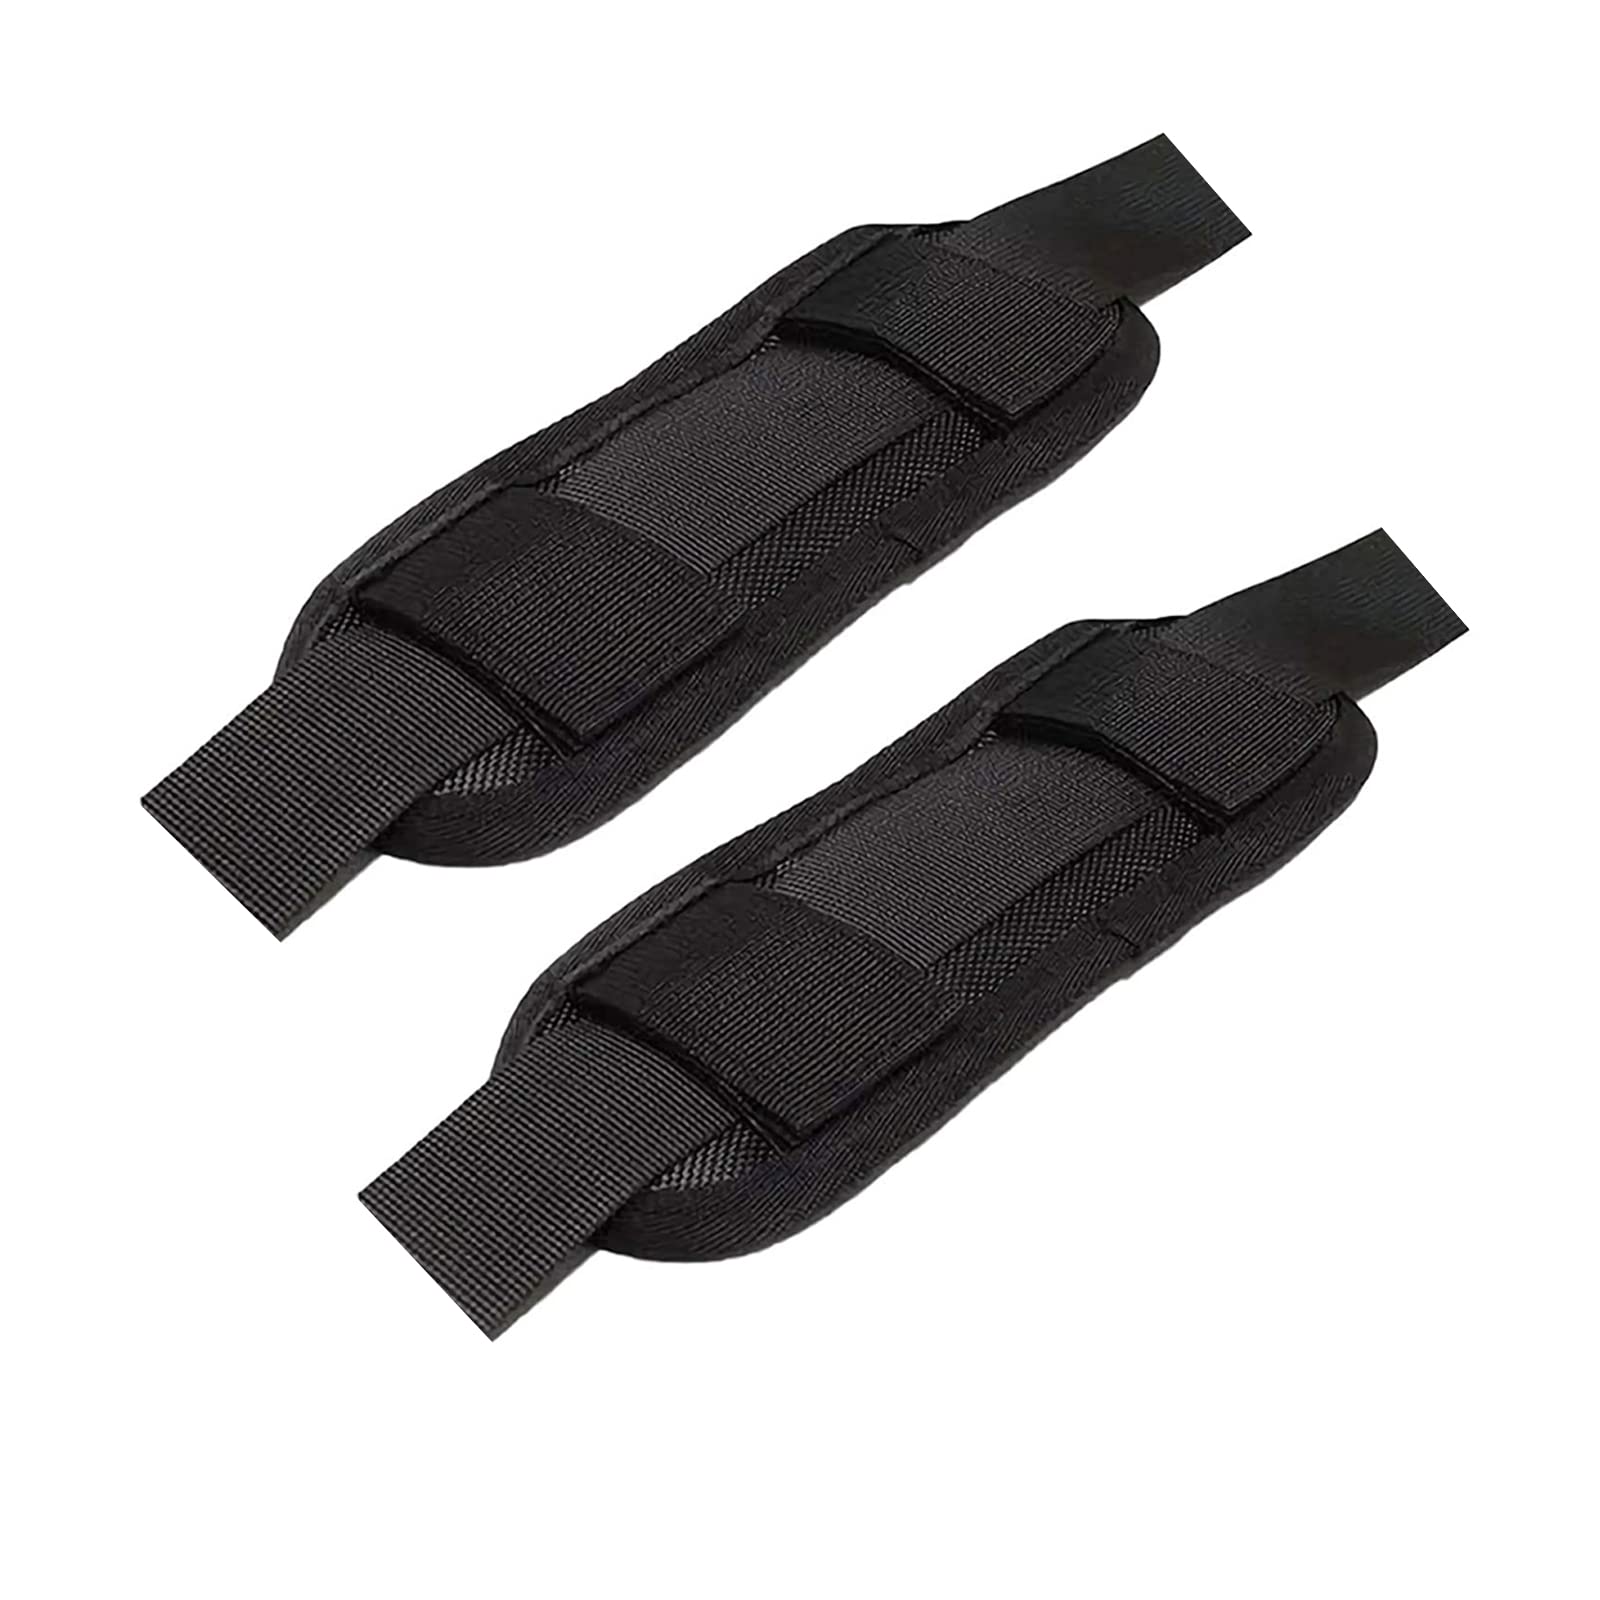 KEQKEV Abnehmbare Schultergurt-Pad-Tasche Schulterpolster Gewehr Sling Pad für Rucksack, Kamera, Laptop, Kuriertasche, Gitarre (2 Stück), Schwarz x 2, Medium von KEQKEV